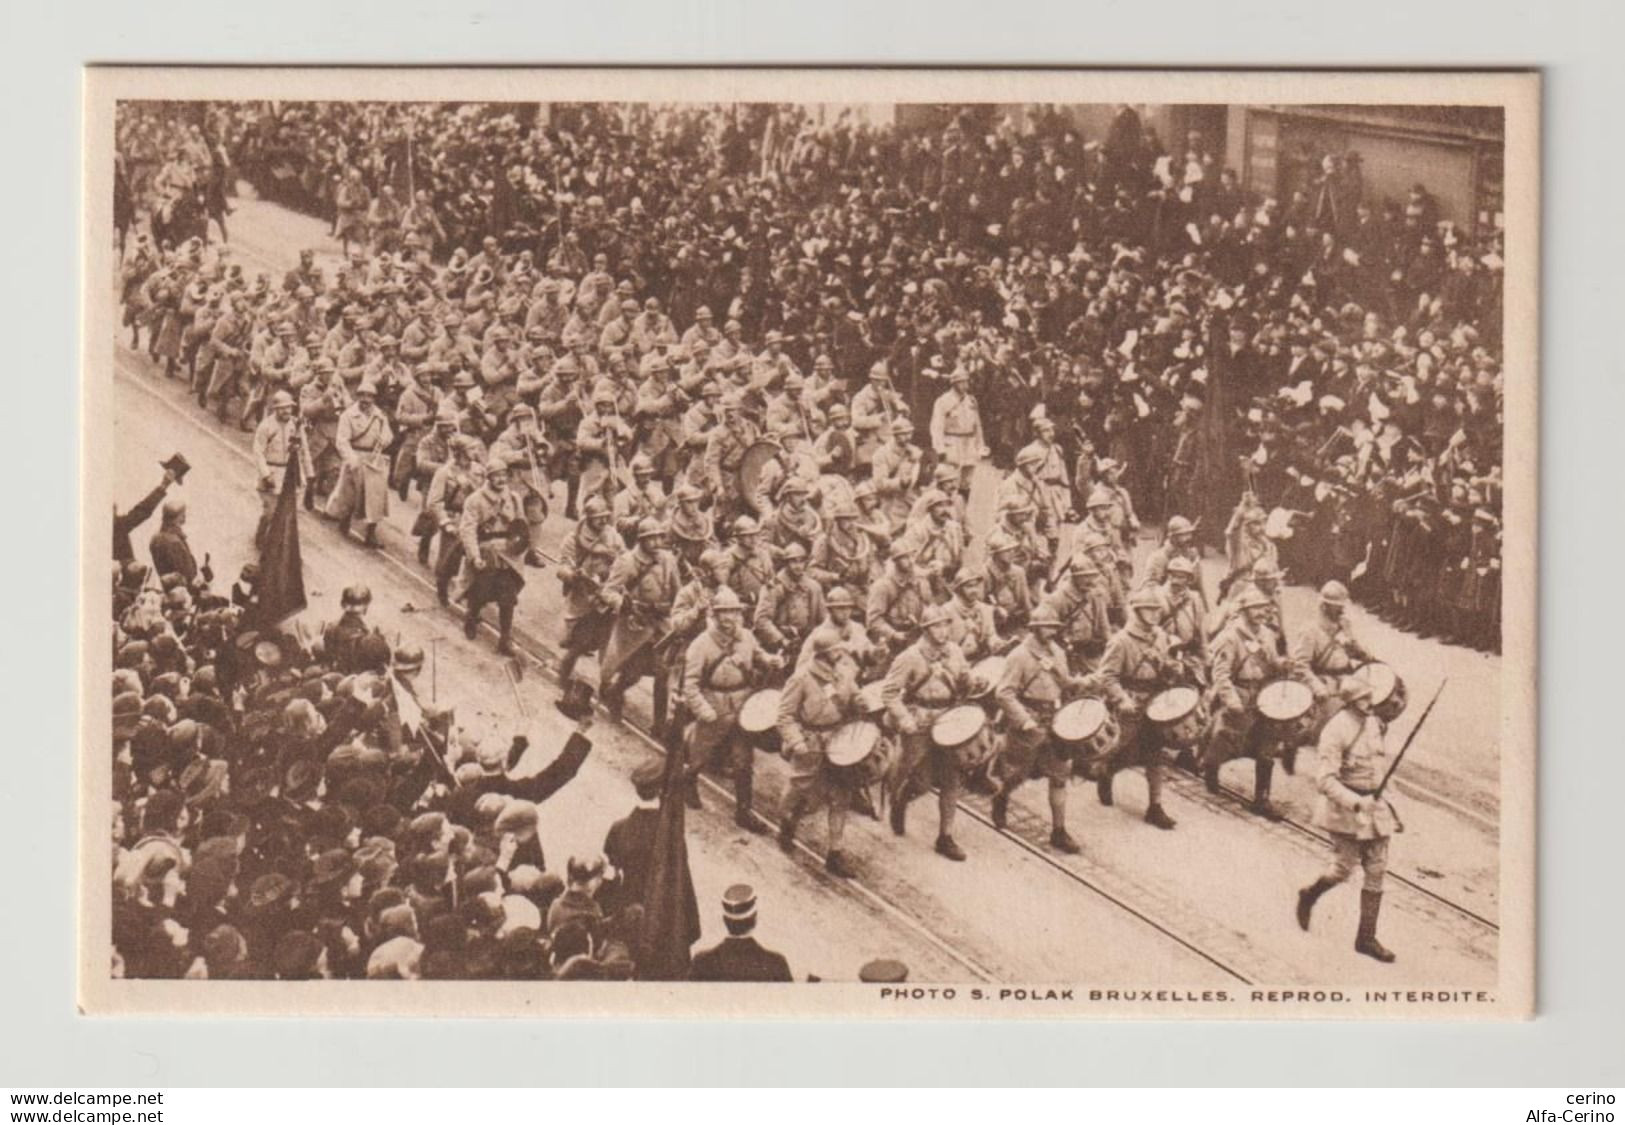 BRUXELLES:  LA  MUSIQUE  FRANCAISE  -  A  FRENCH  BAND  -  FRANSCHE  MUZIEK  -  PHOTO  -  FP - Weltkrieg 1914-18